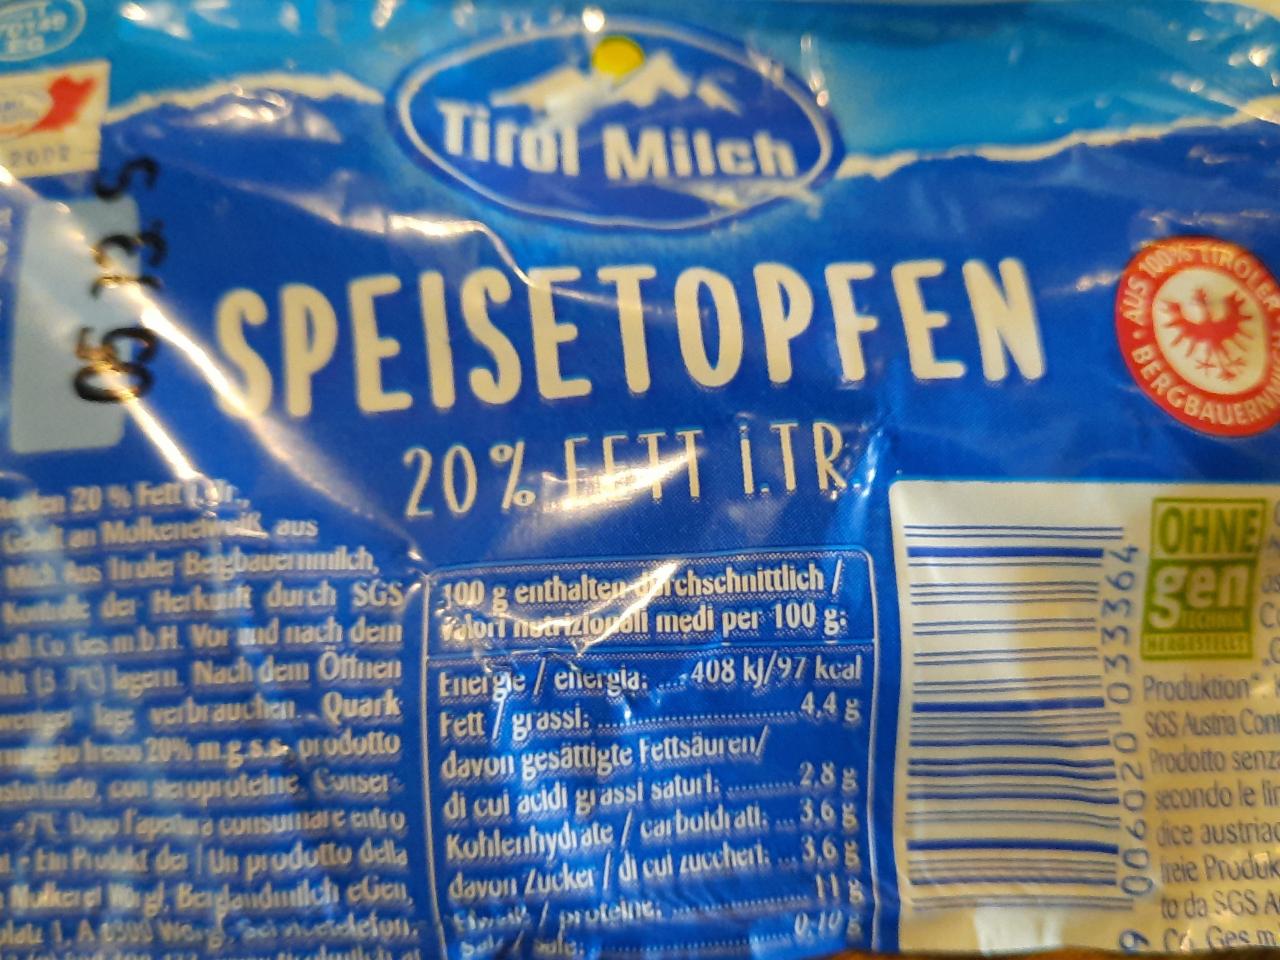 Fotografie - Speisetopfen 20% Tirol Milch